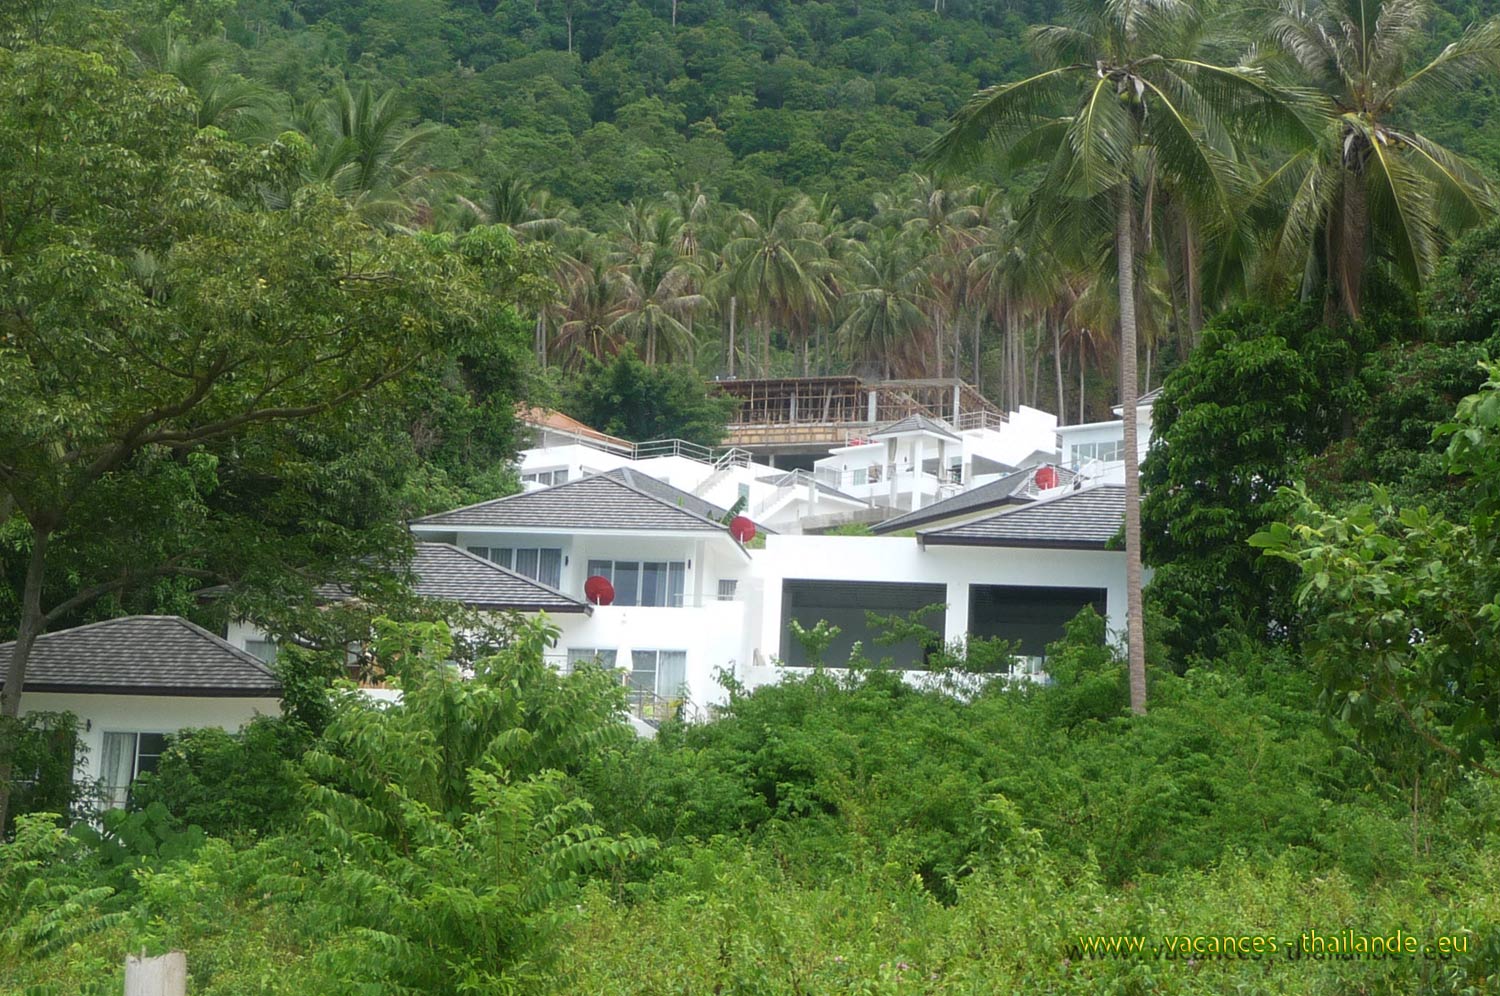 vacances-thailande, photo 22 la maison au milieu de la foret de cocotiers sur le flanc de la montagne à Koh Samui en Thaïlande,